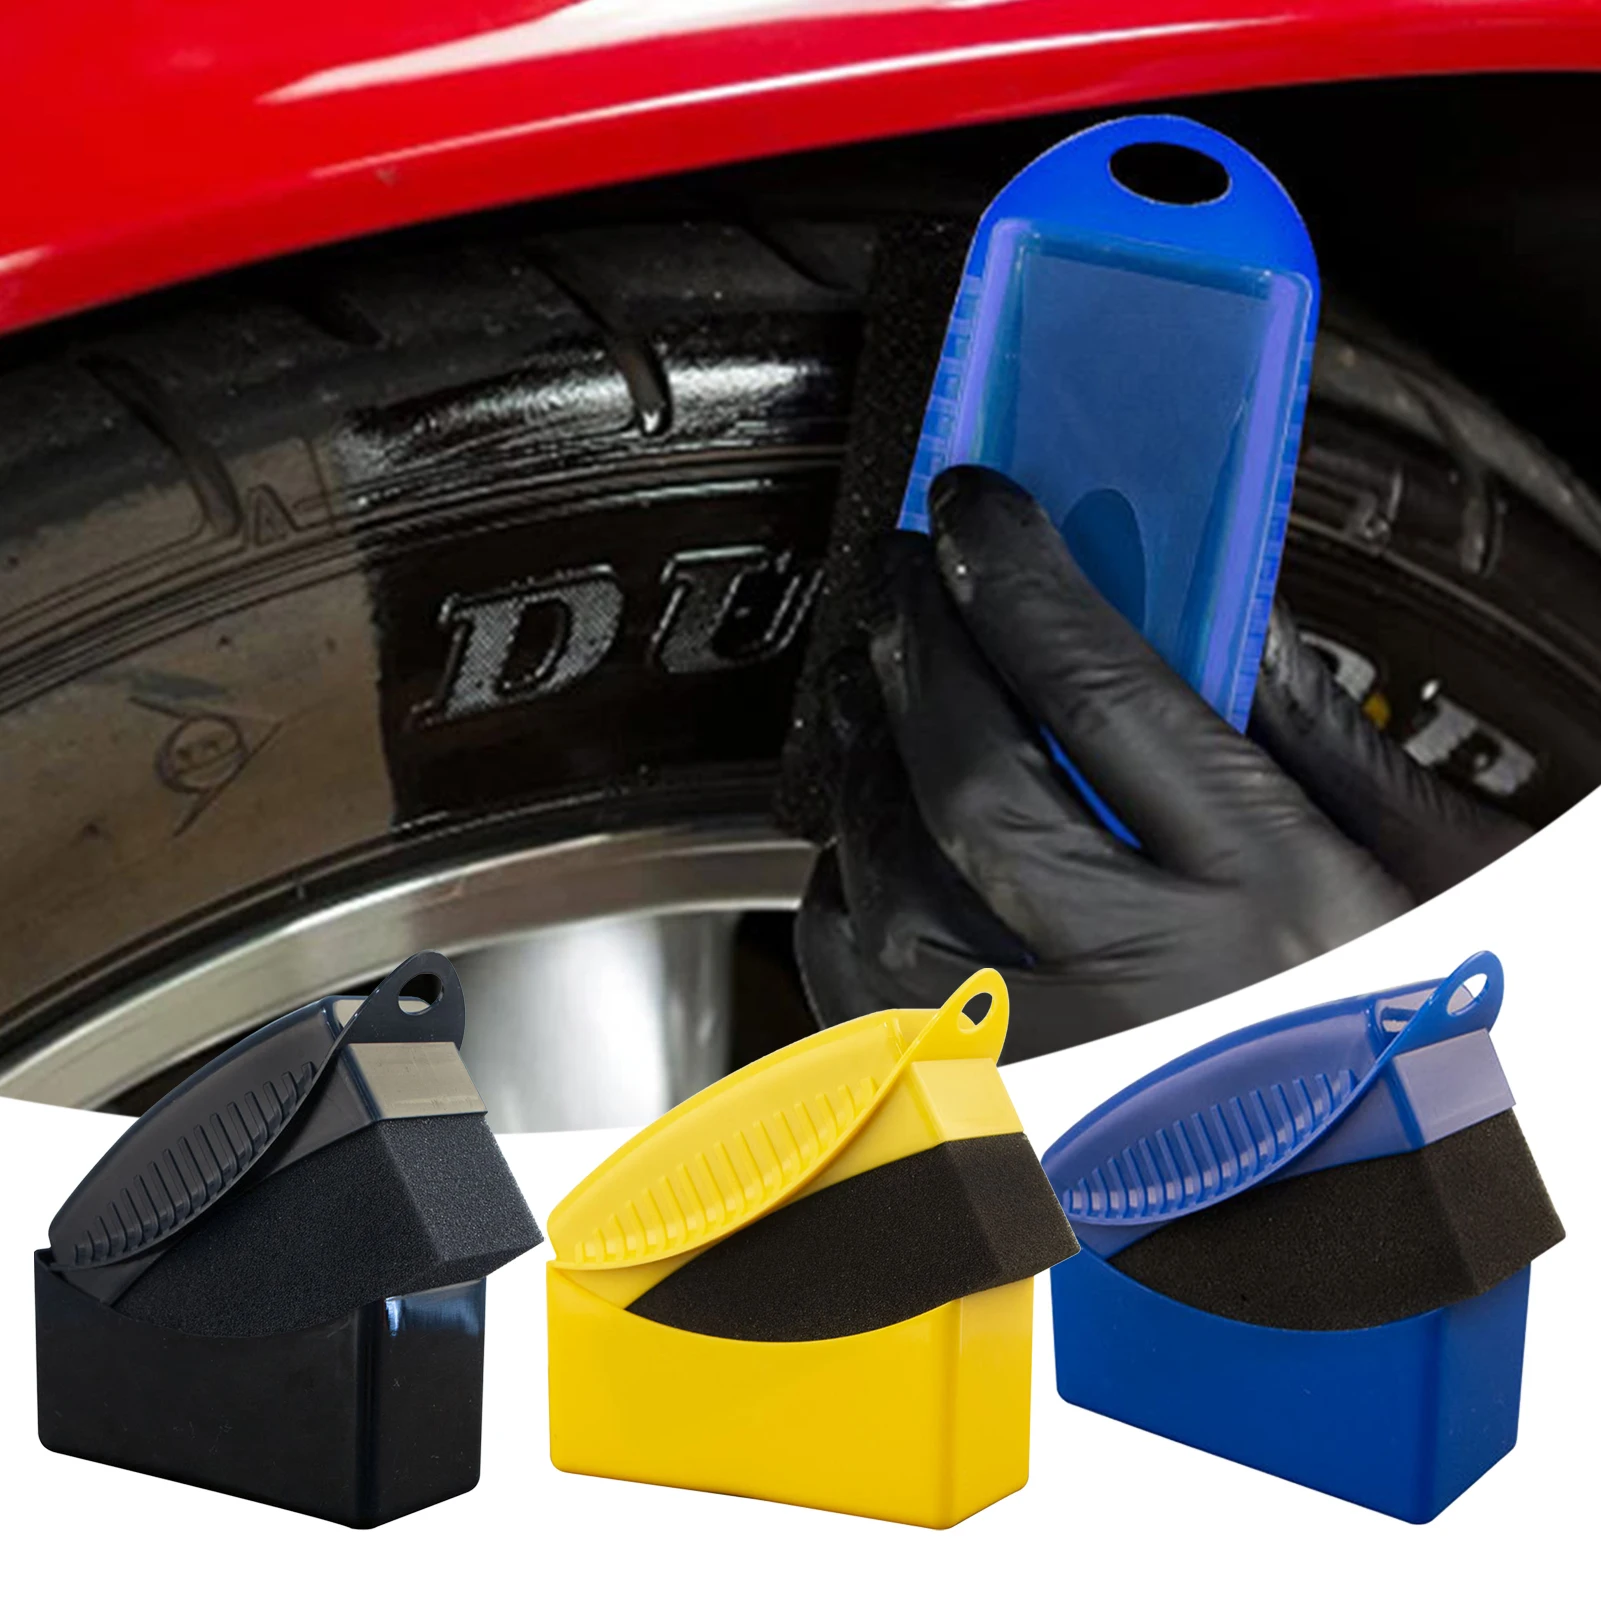 

Губка для полировки автомобильных колес, восковая щетка, чистящее средство высокого давления для автомобильных шин, аксессуары для чистки деталей автомобиля